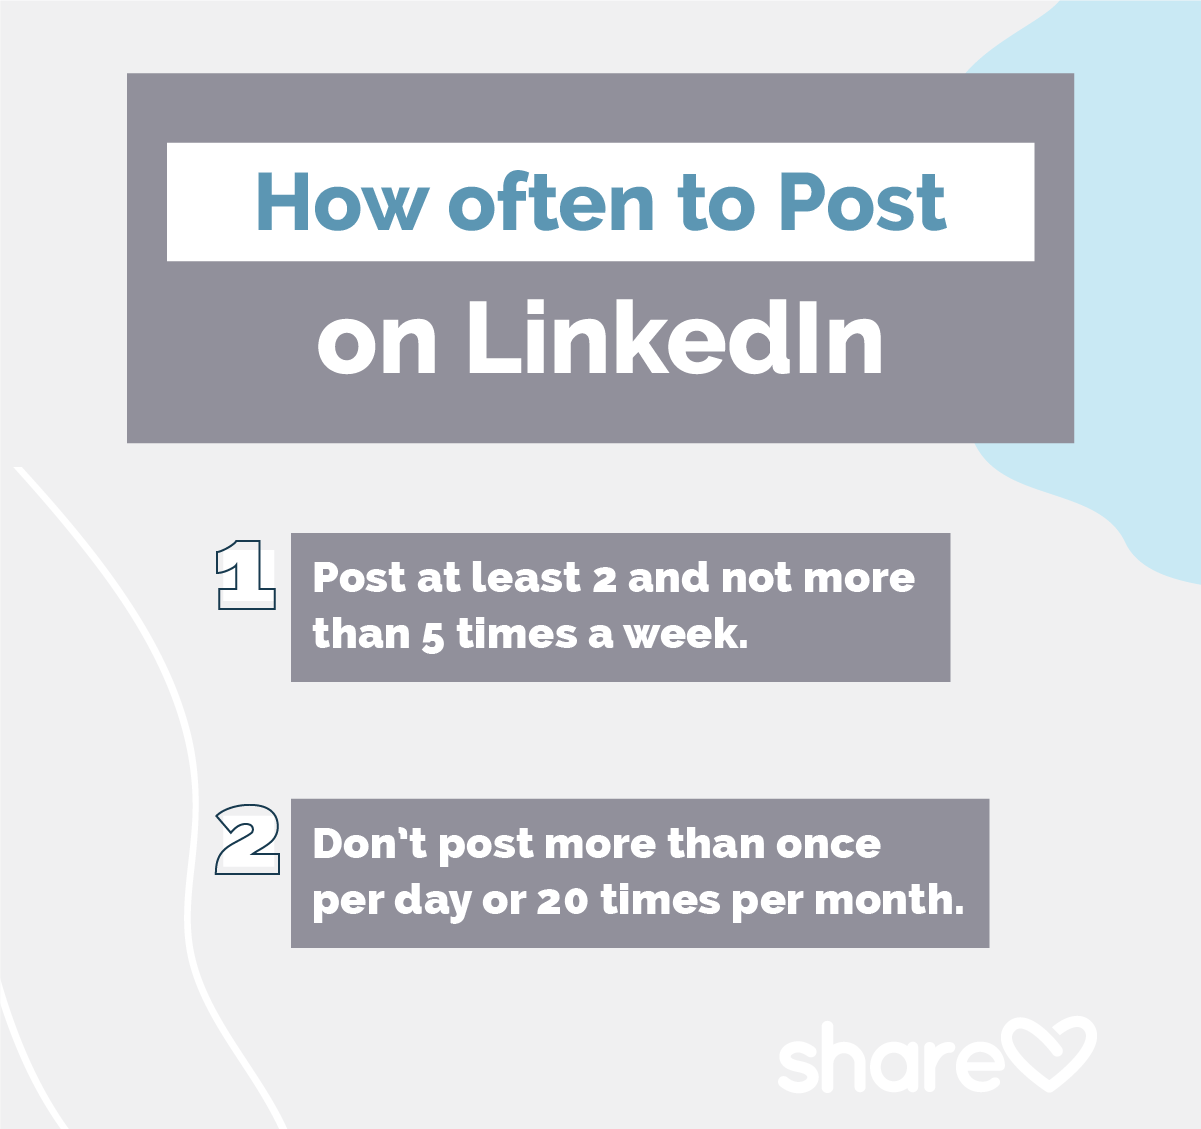 How often to Post on LinkedIn